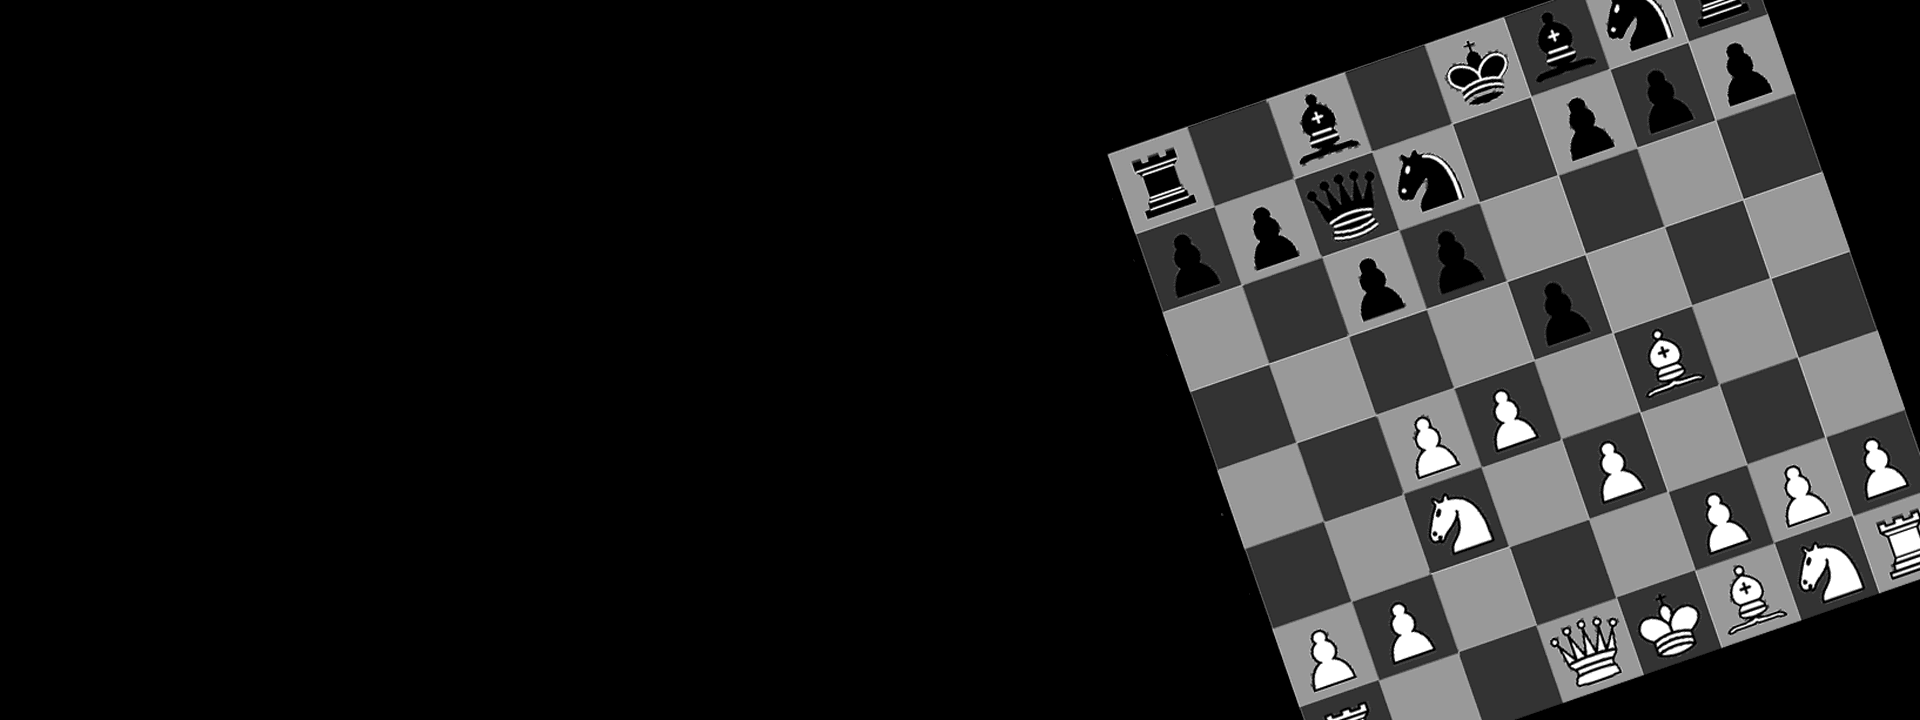 Maia - AI chessboard